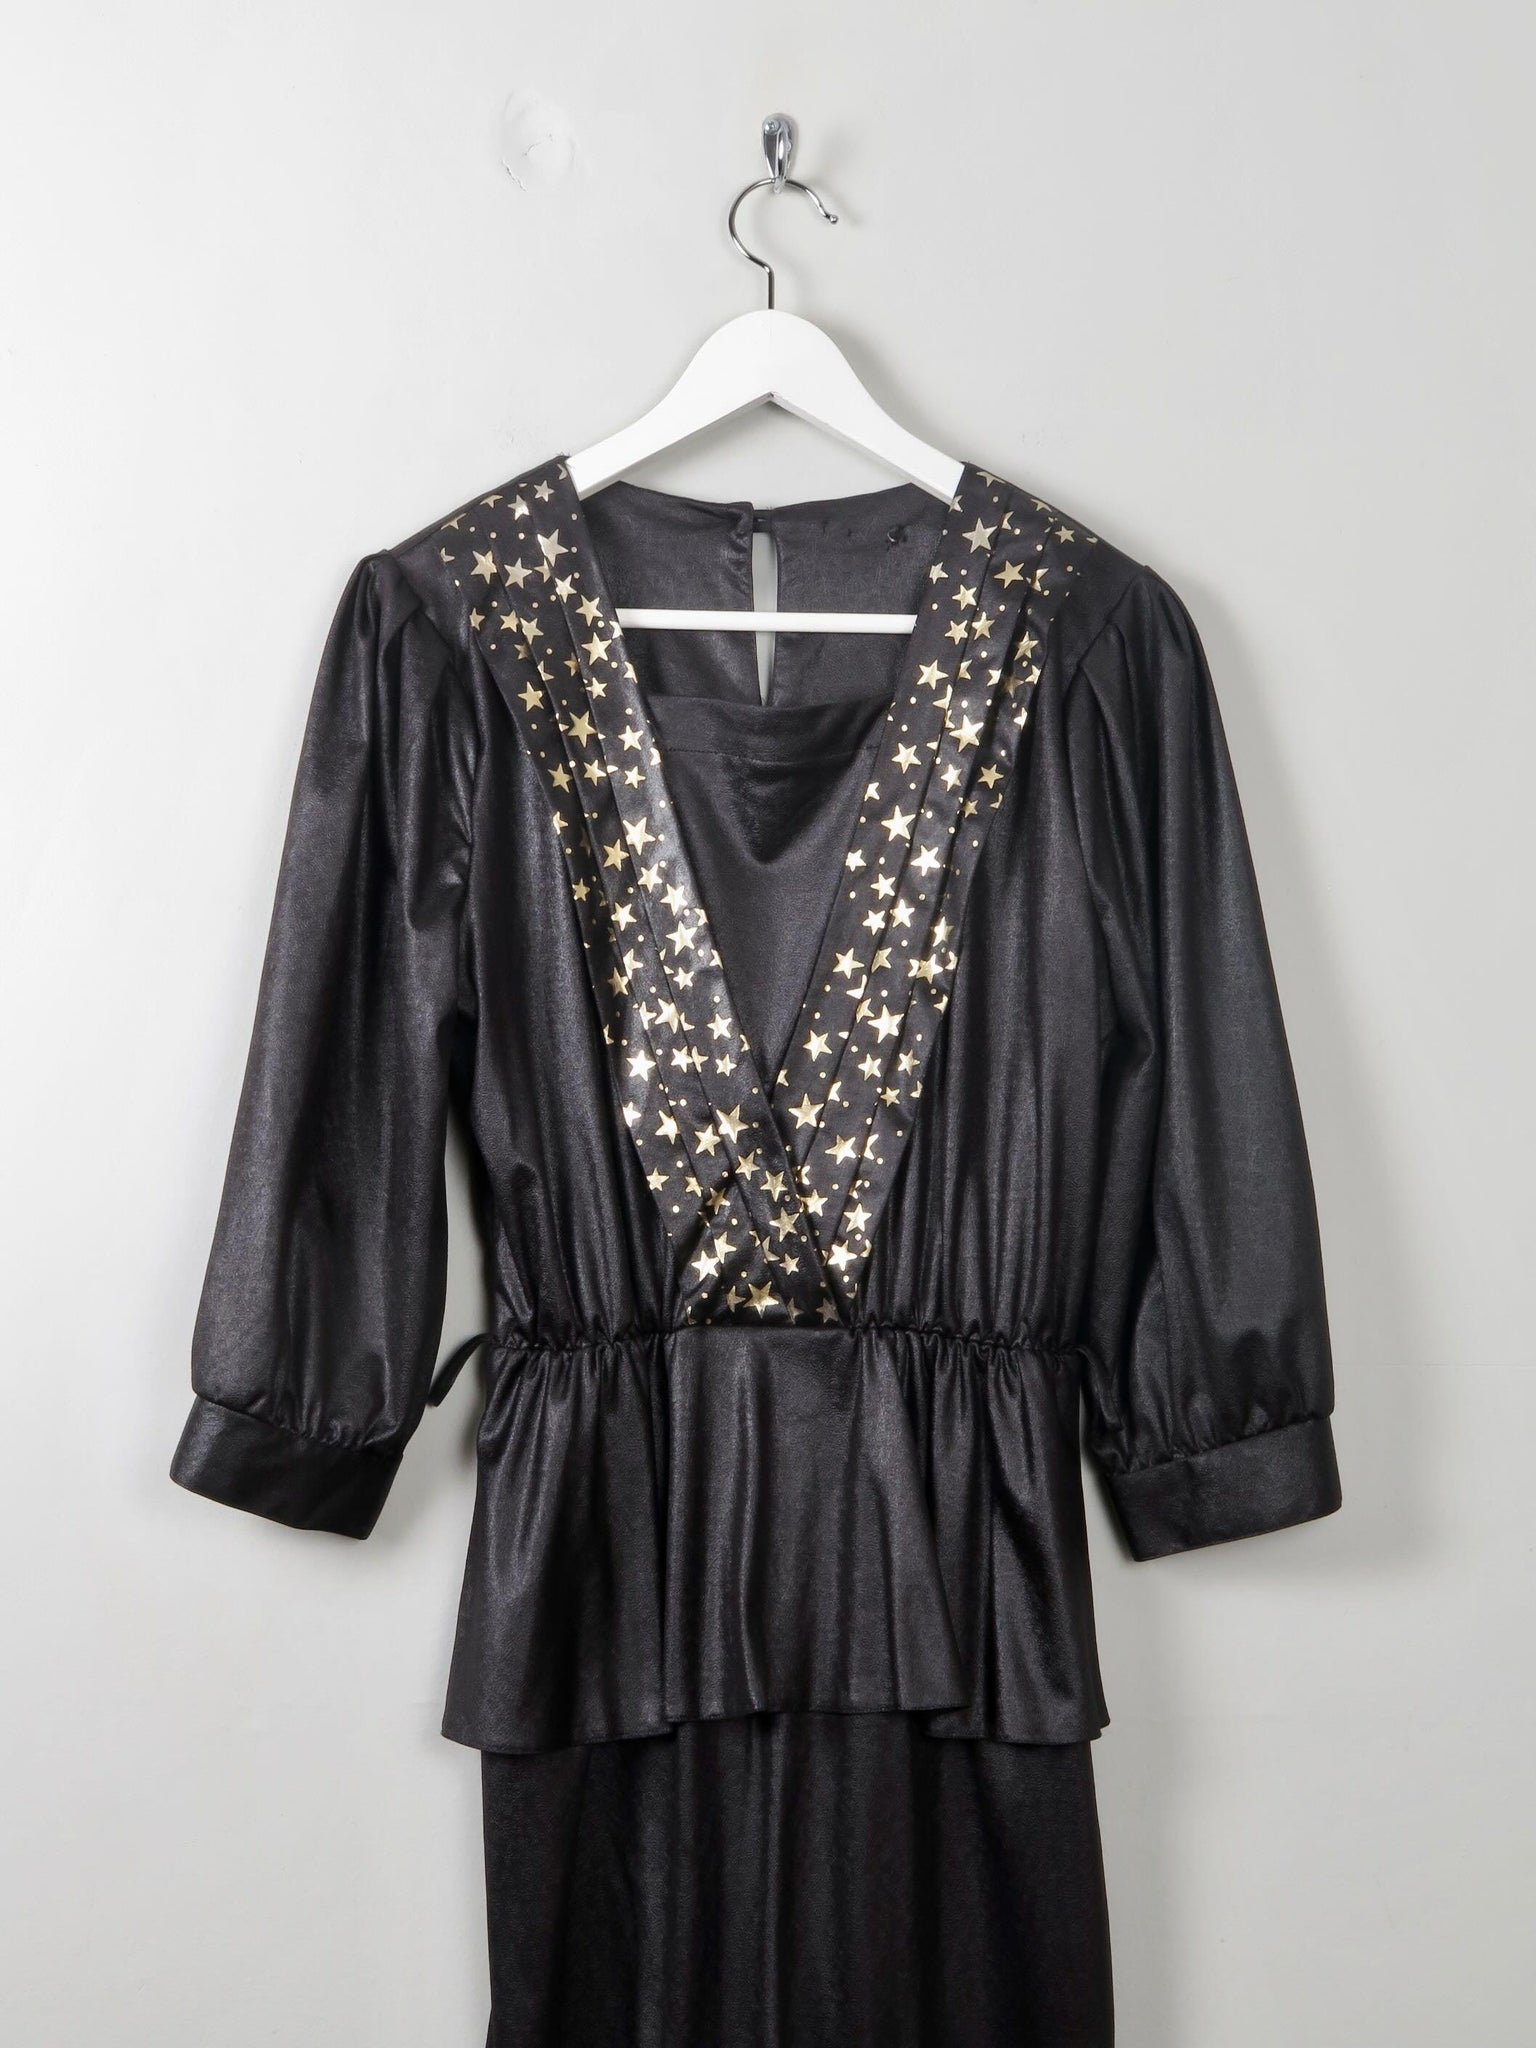 Vintage Black 1980s Star Dress S - The Harlequin